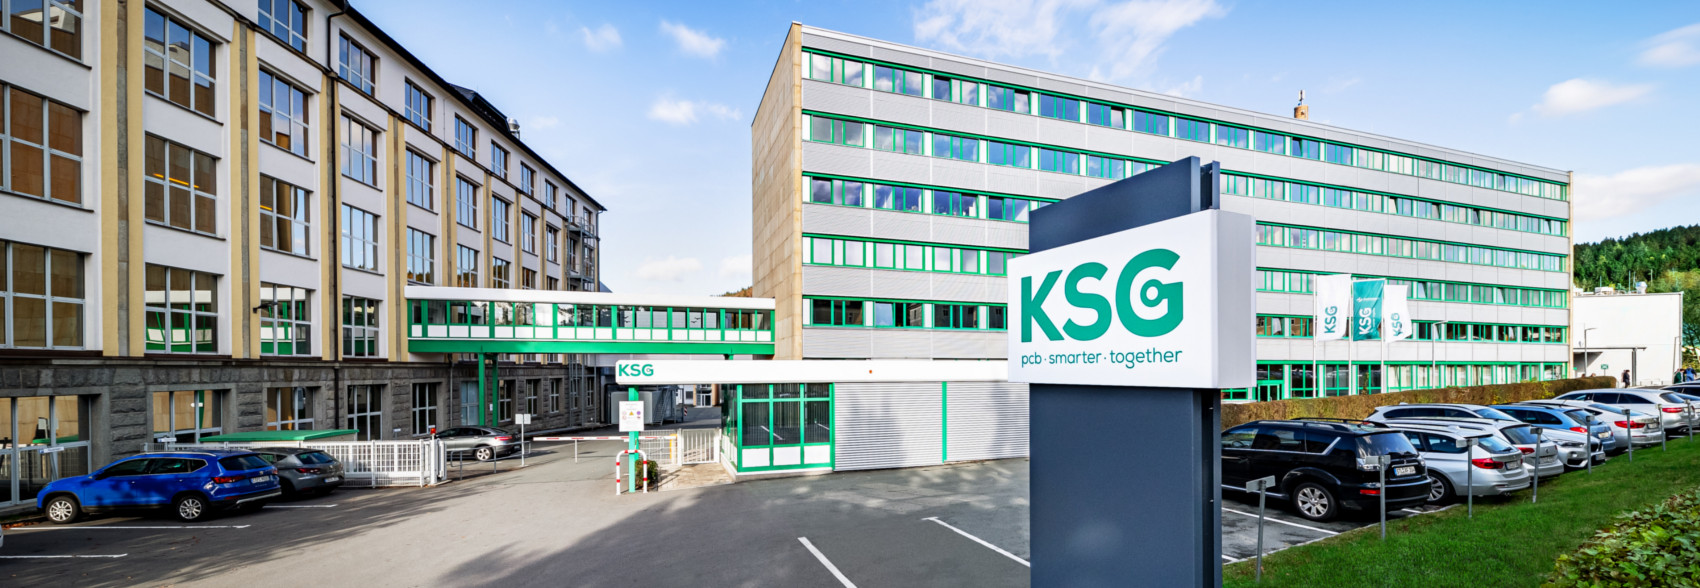 KSG GmbH - Chemnitz zieht an - 9 Stellenangebote